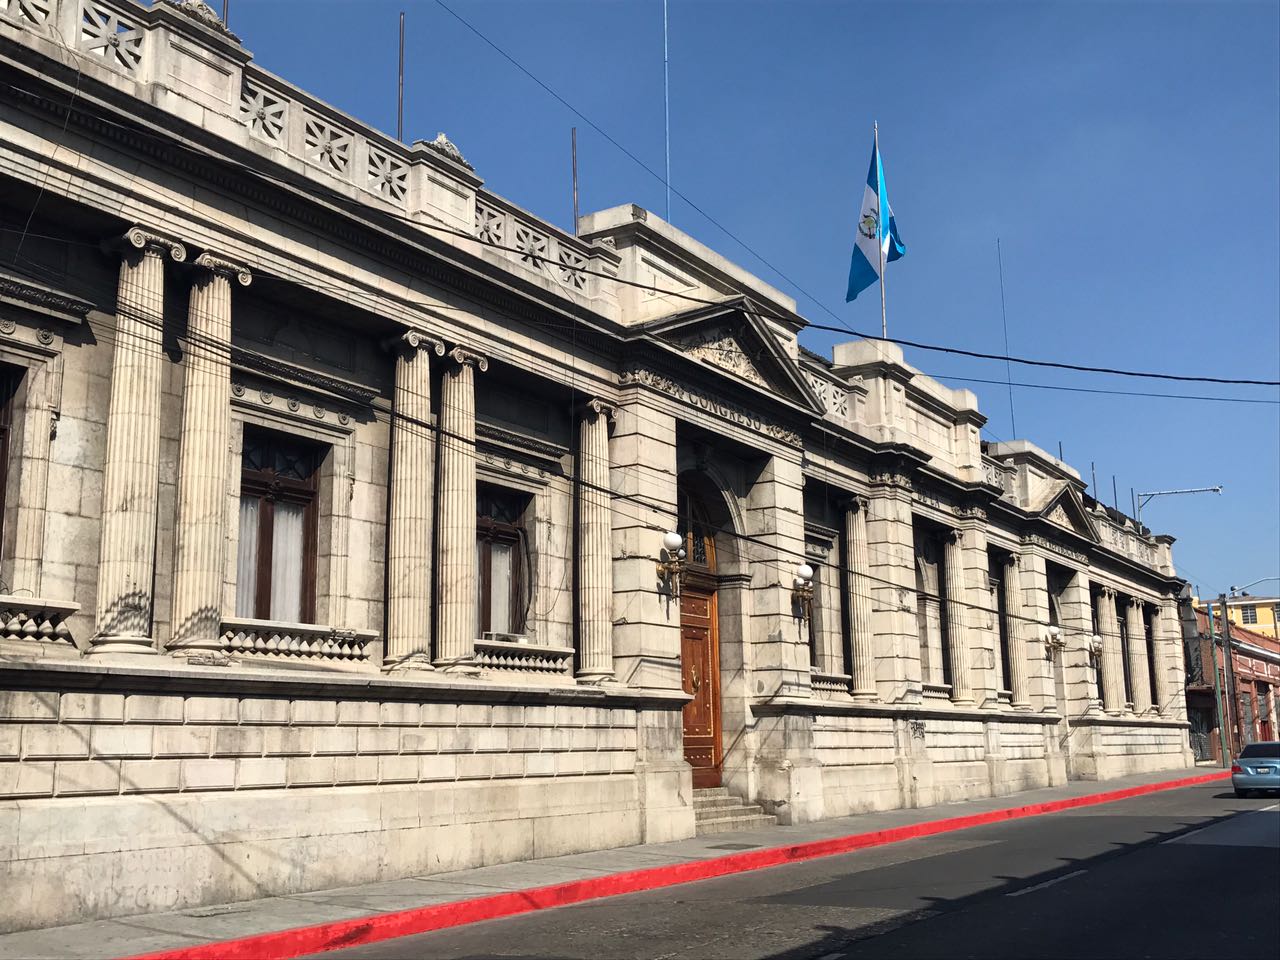 Congreso de la República de Guatemala